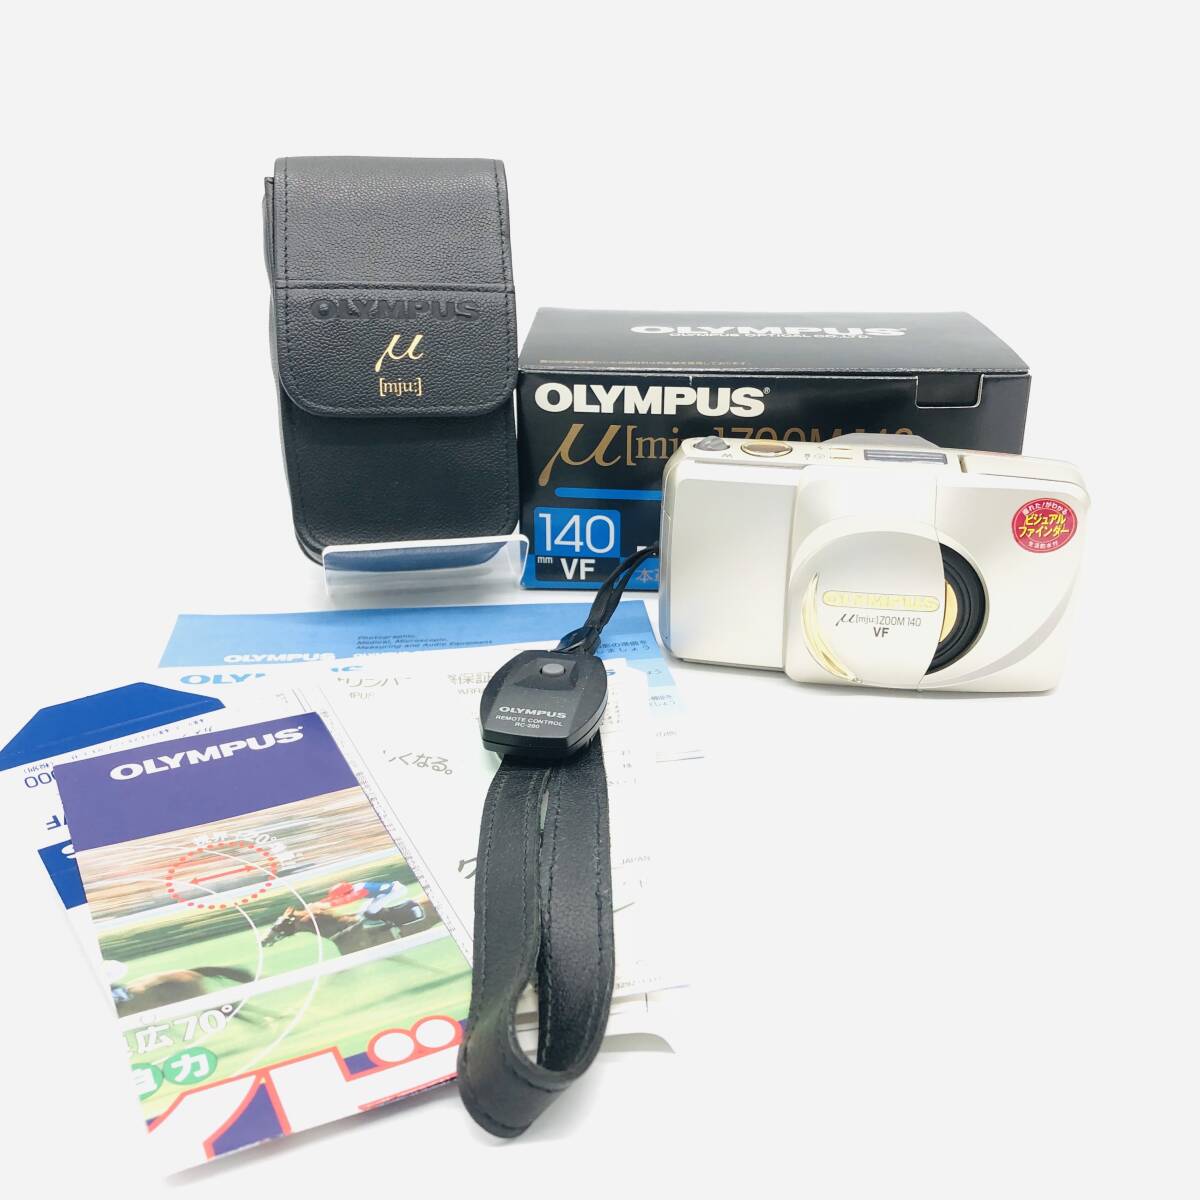 保管品 オリンパス OLYMPUS μ[mju:] ZOOM 140 VF LENS 38-140mm コンパクトフィルム カメラ ストラップ ケース付 箱入